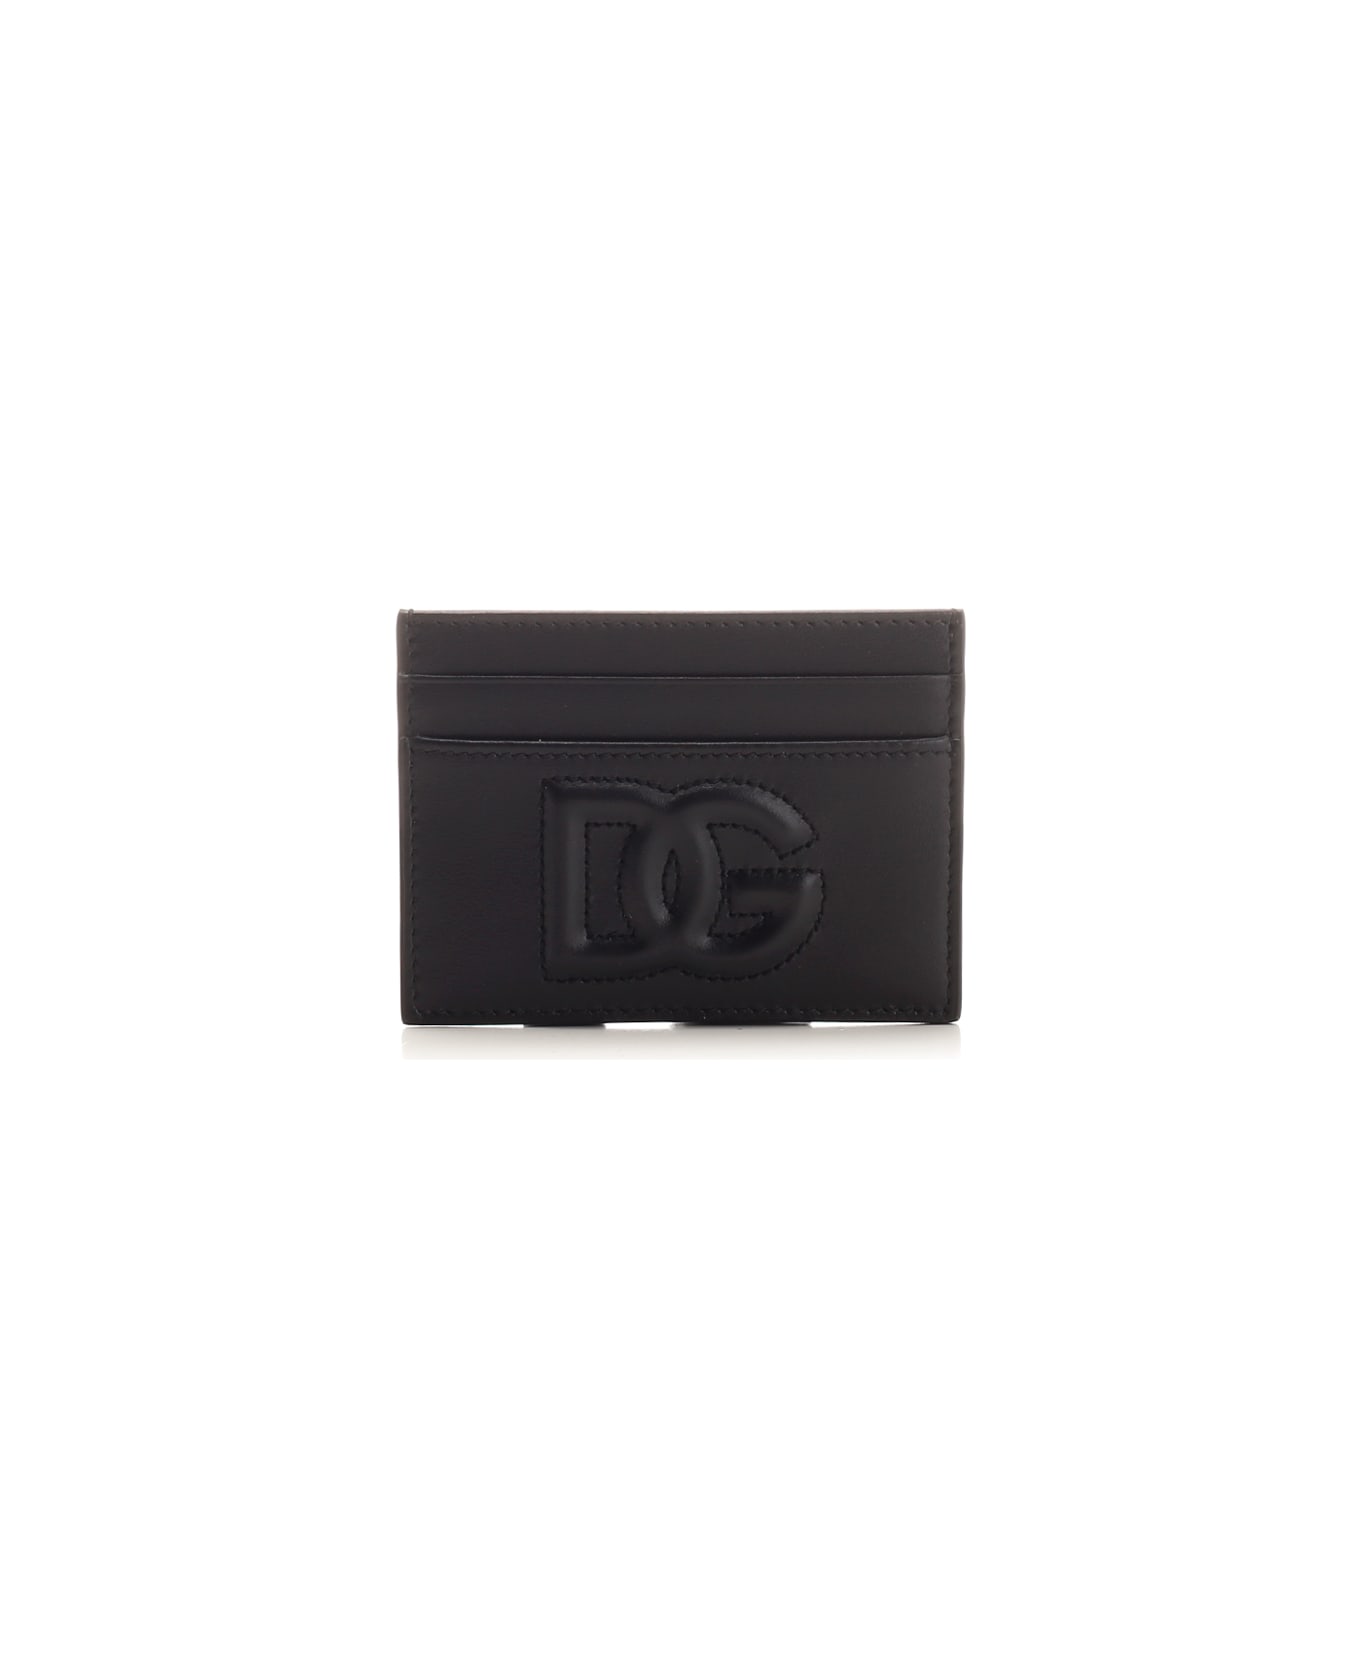 Dolce & Gabbana Classic Card Case - Nero 財布